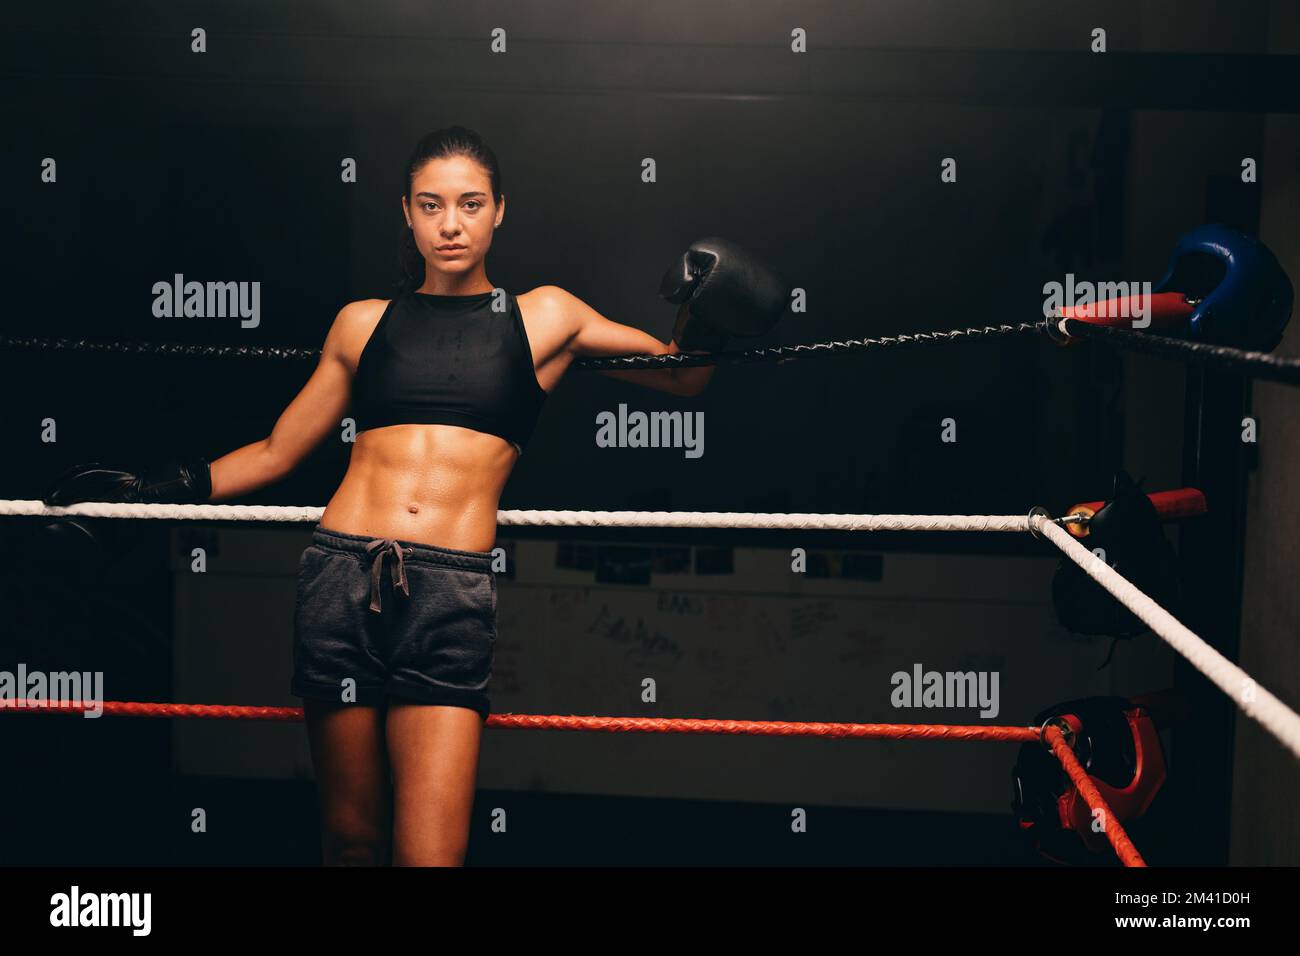 Sportliche junge Frau, die in einem Boxring in die Kamera schaut, während sie an den Seilen steht. Boxertraining in einem Fitnessraum. Stockfoto